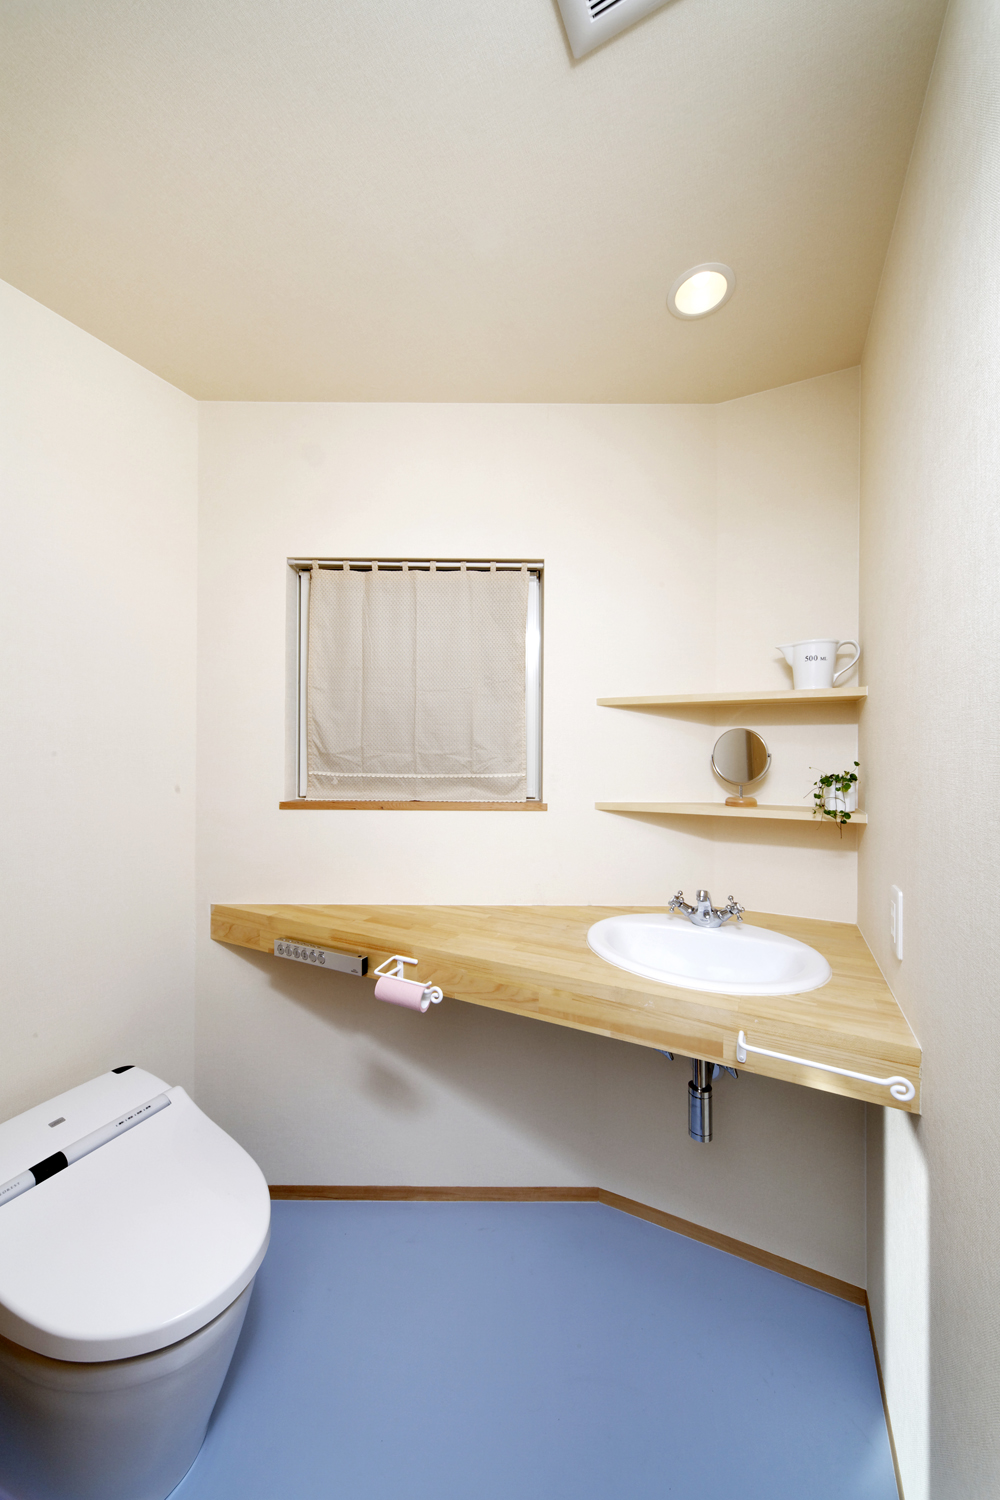 変形型の空間に角を有効活用した、水色の床がかわいらしいトイレ